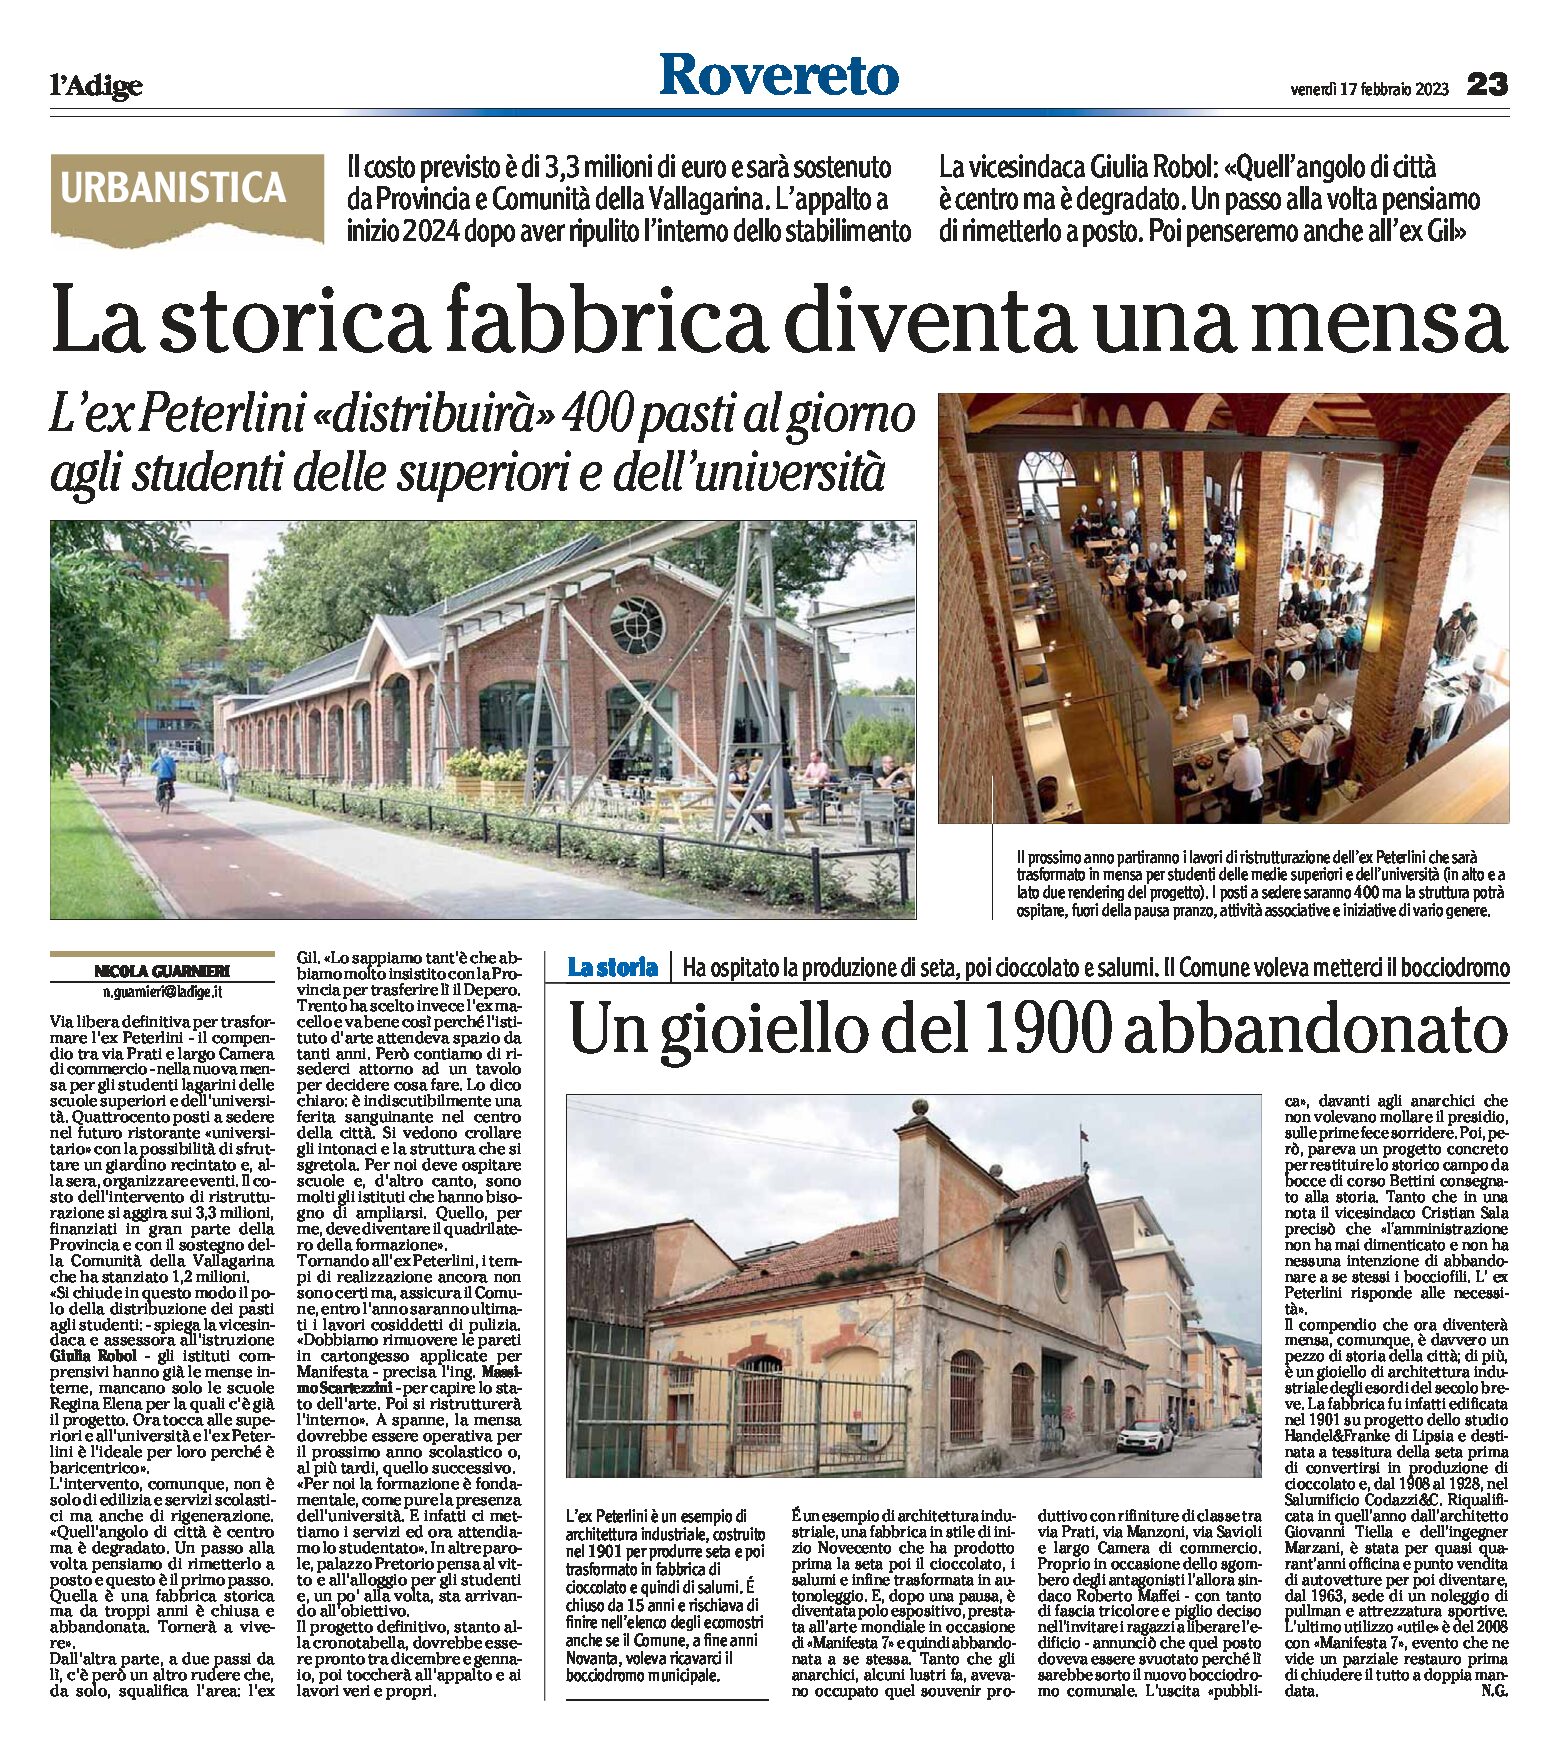 Rovereto, ex Peterlini: la storica fabbrica diventa mensa per studenti